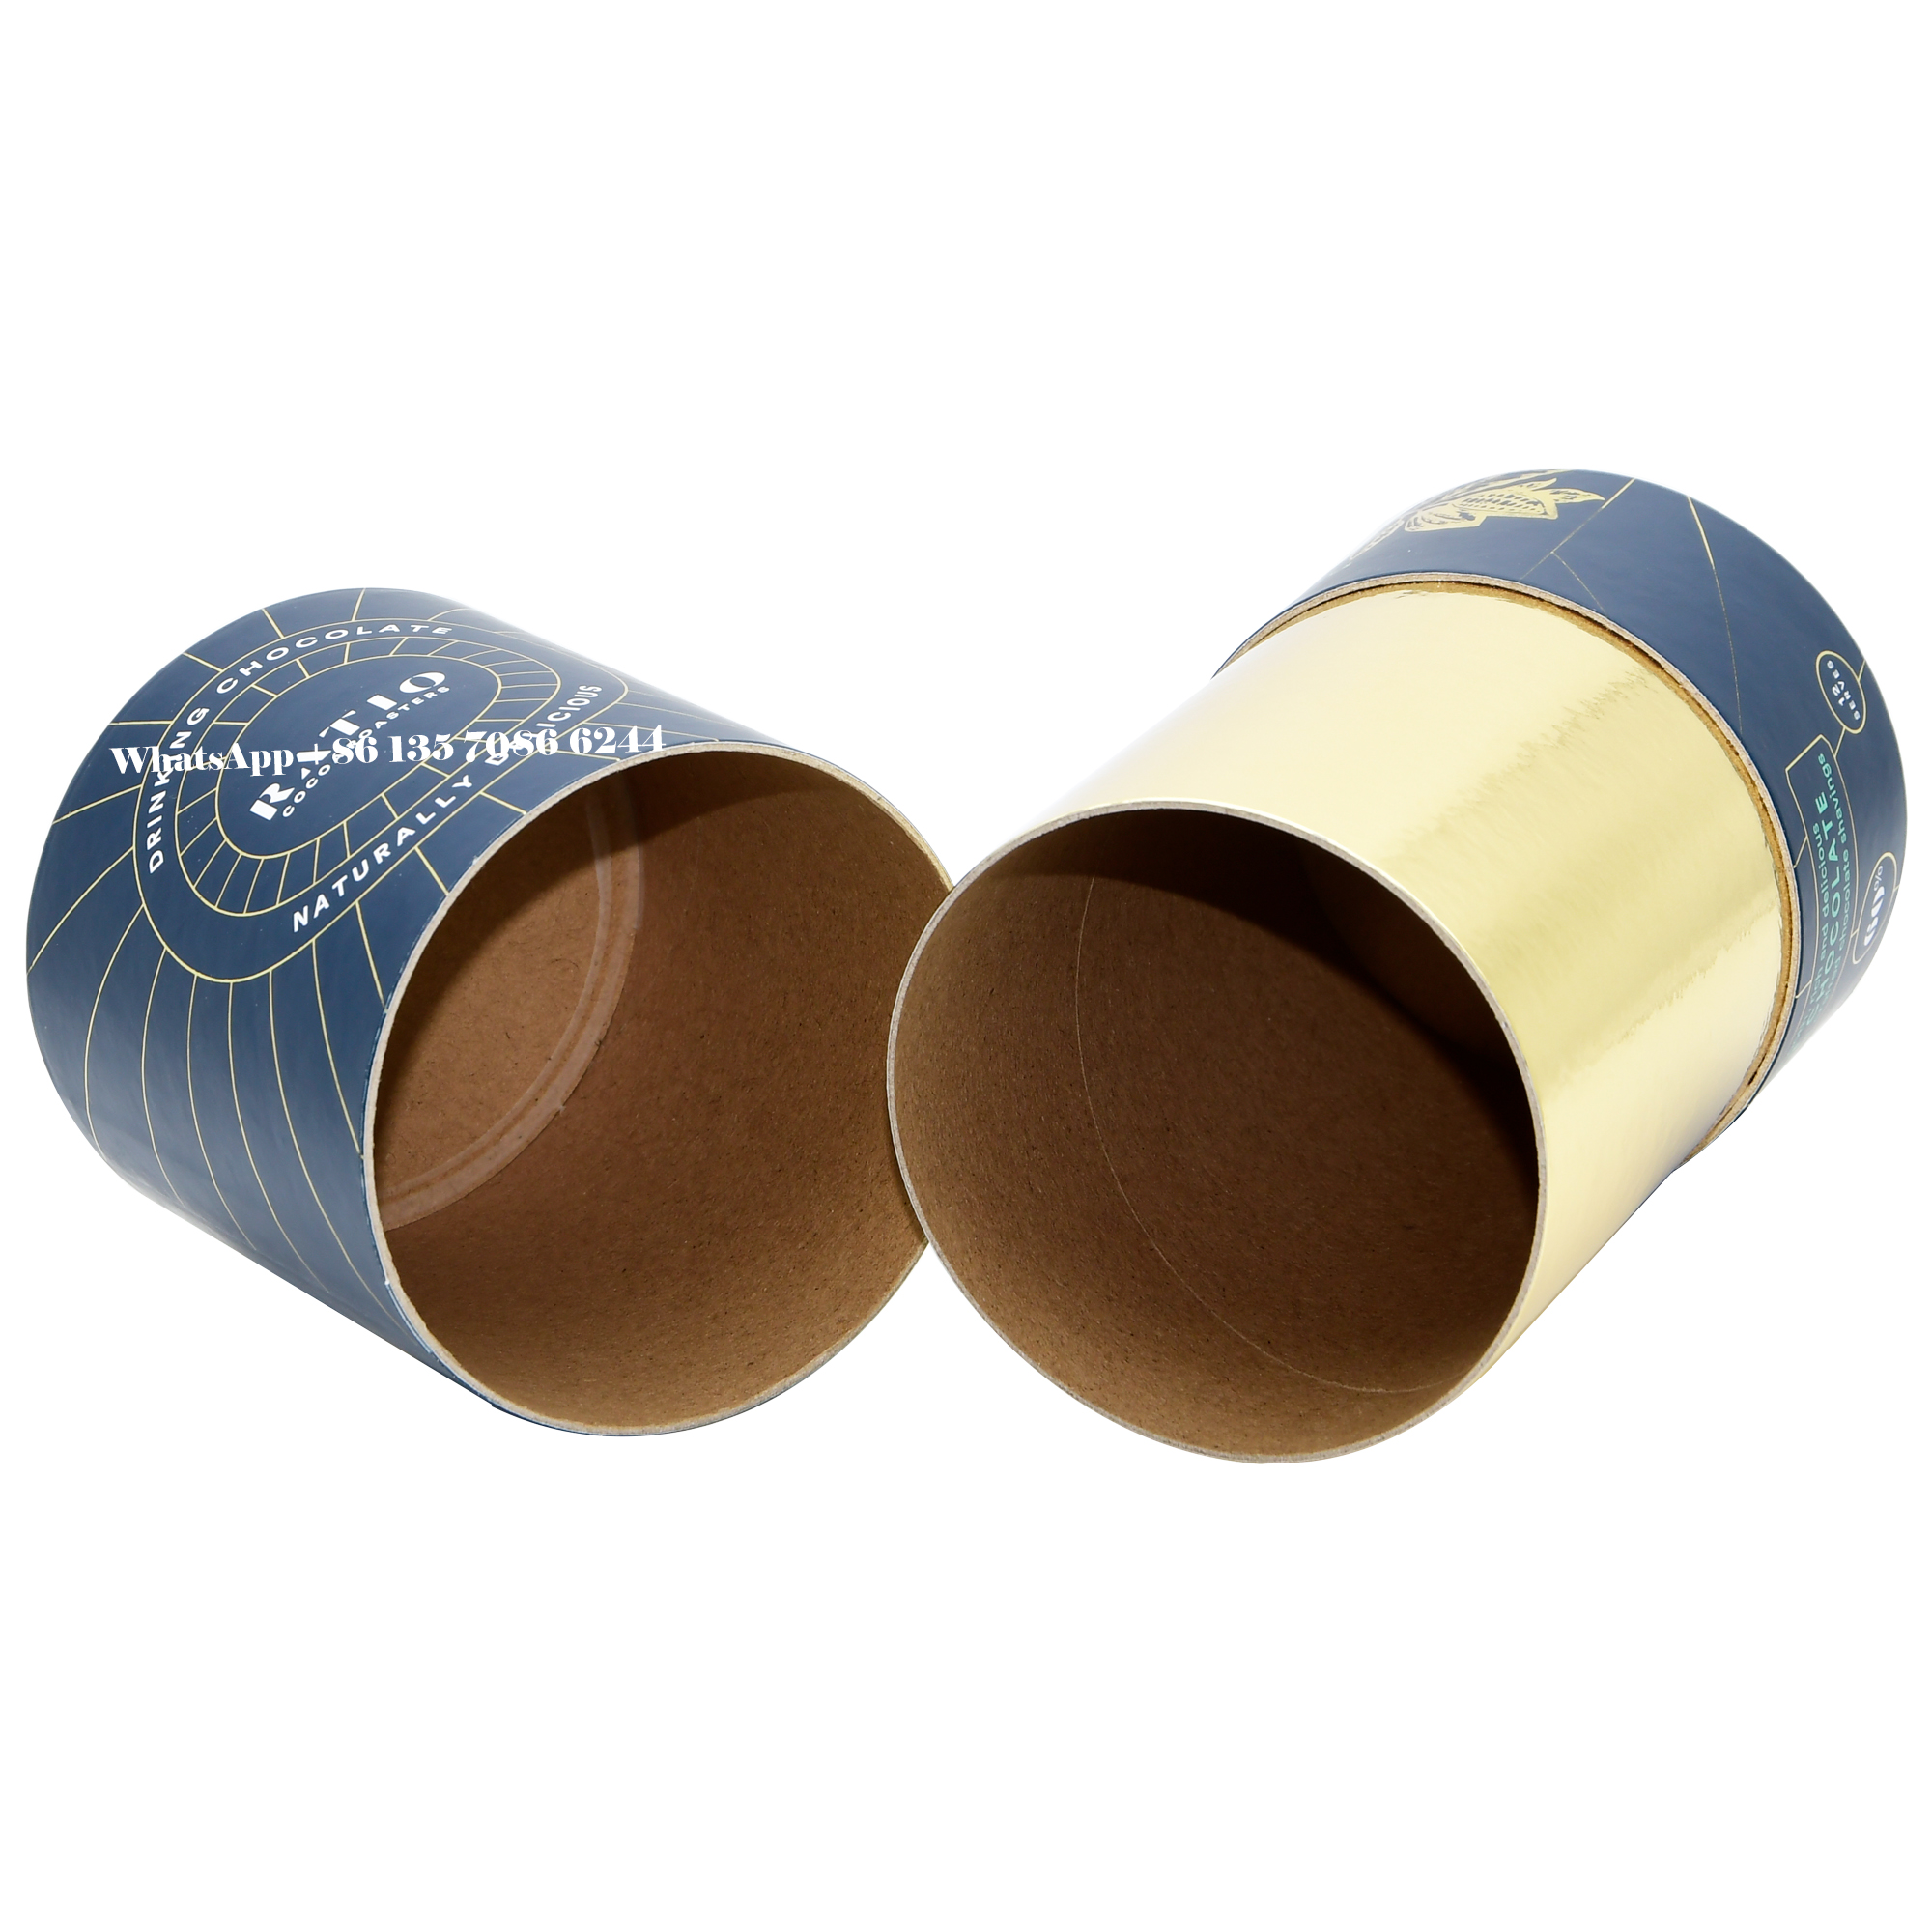  Scatola cilindrica in carta antiumidità per cacao in polvere al cioccolato  